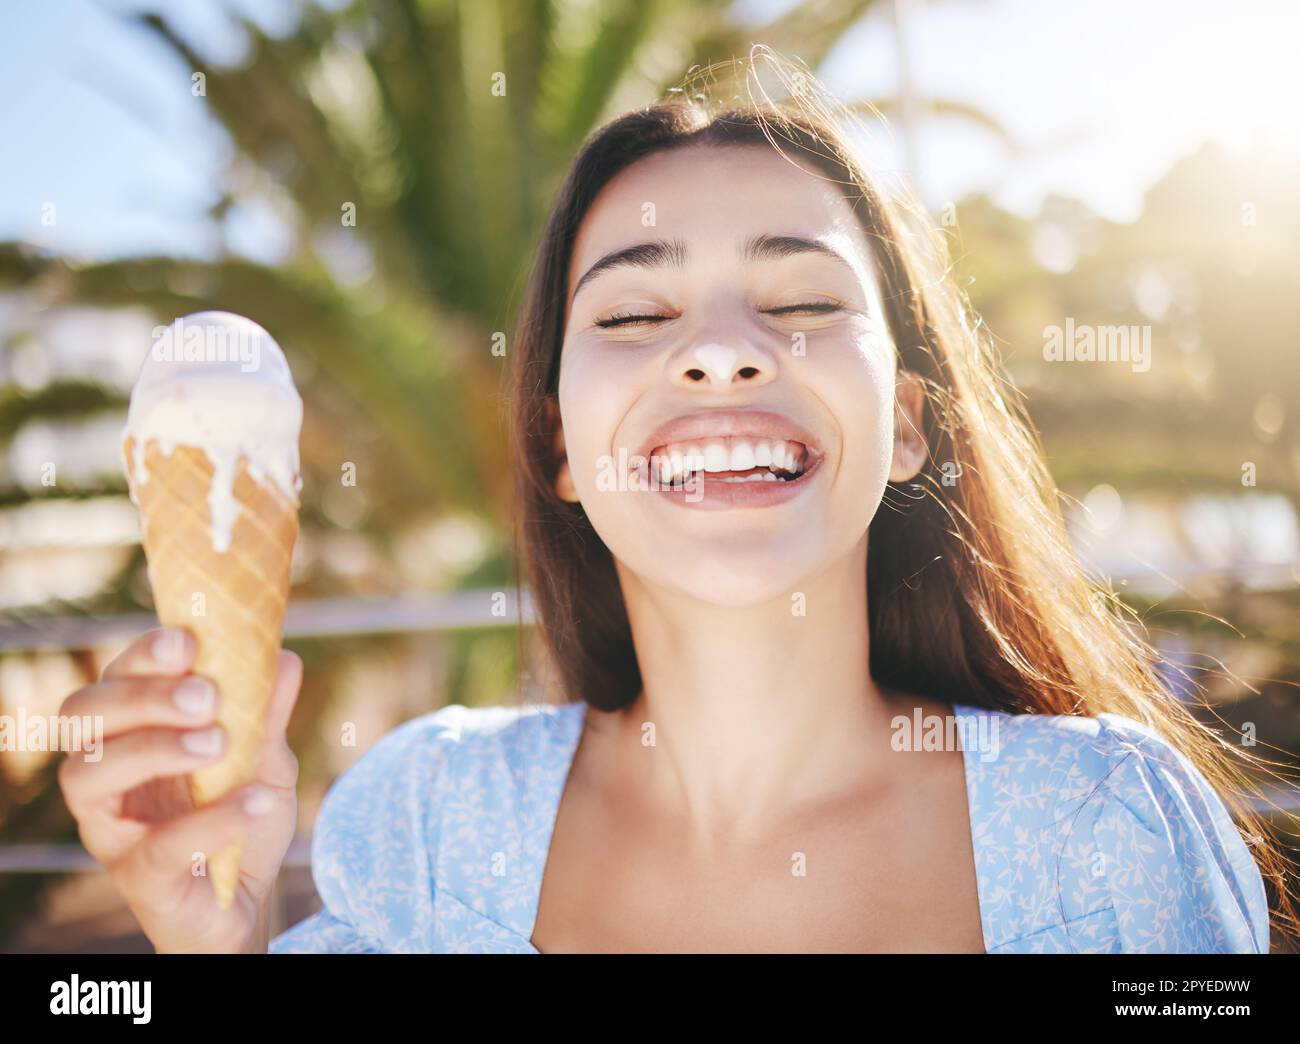 Eis, Nachtisch und Frau mit Lächeln im Urlaub in Miami im Sommer. Gesicht eines glücklichen, aufgeregten und jungen Mädchens, das im Frühling auf Reisen in der Stadt süßes Essen oder Eis isst Stockfoto